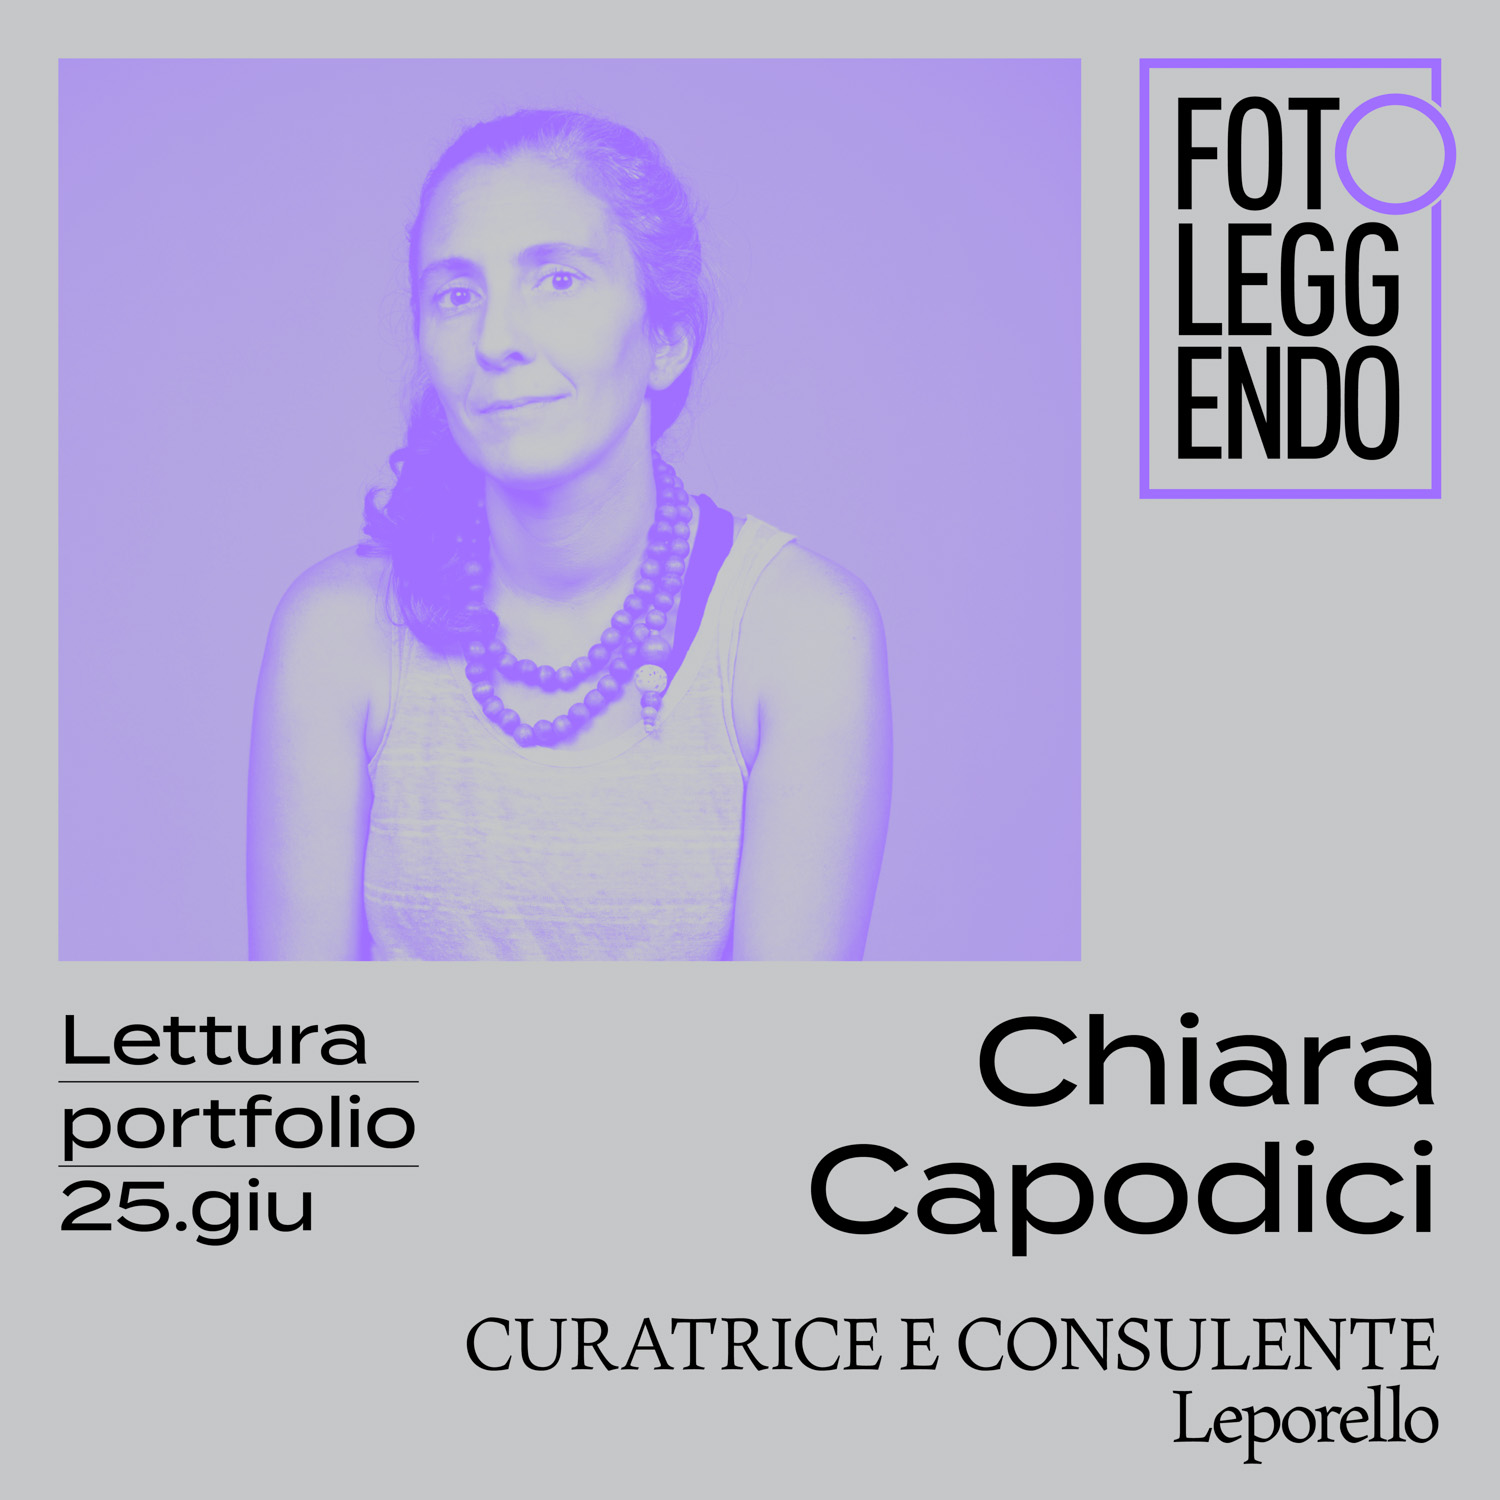 Chiara Capodici